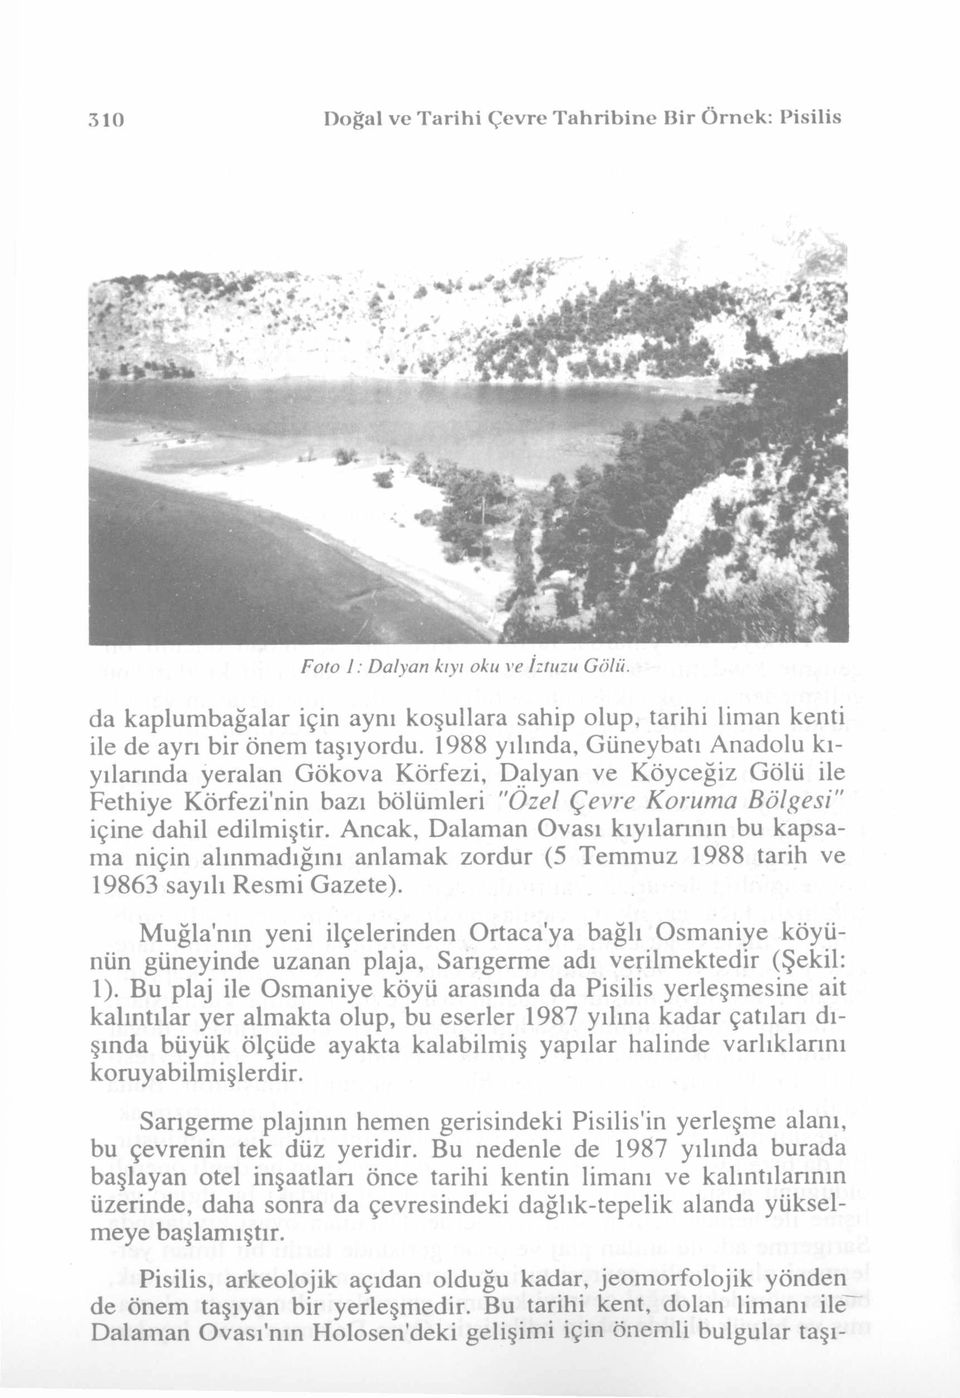 Ancak, Dalaman Ovası kıyılarının bu kapsama niçin alınmadığını anlamak zordur (5 Temmuz 1988 tarih ve 19863 sayılı Resmi Gazete).